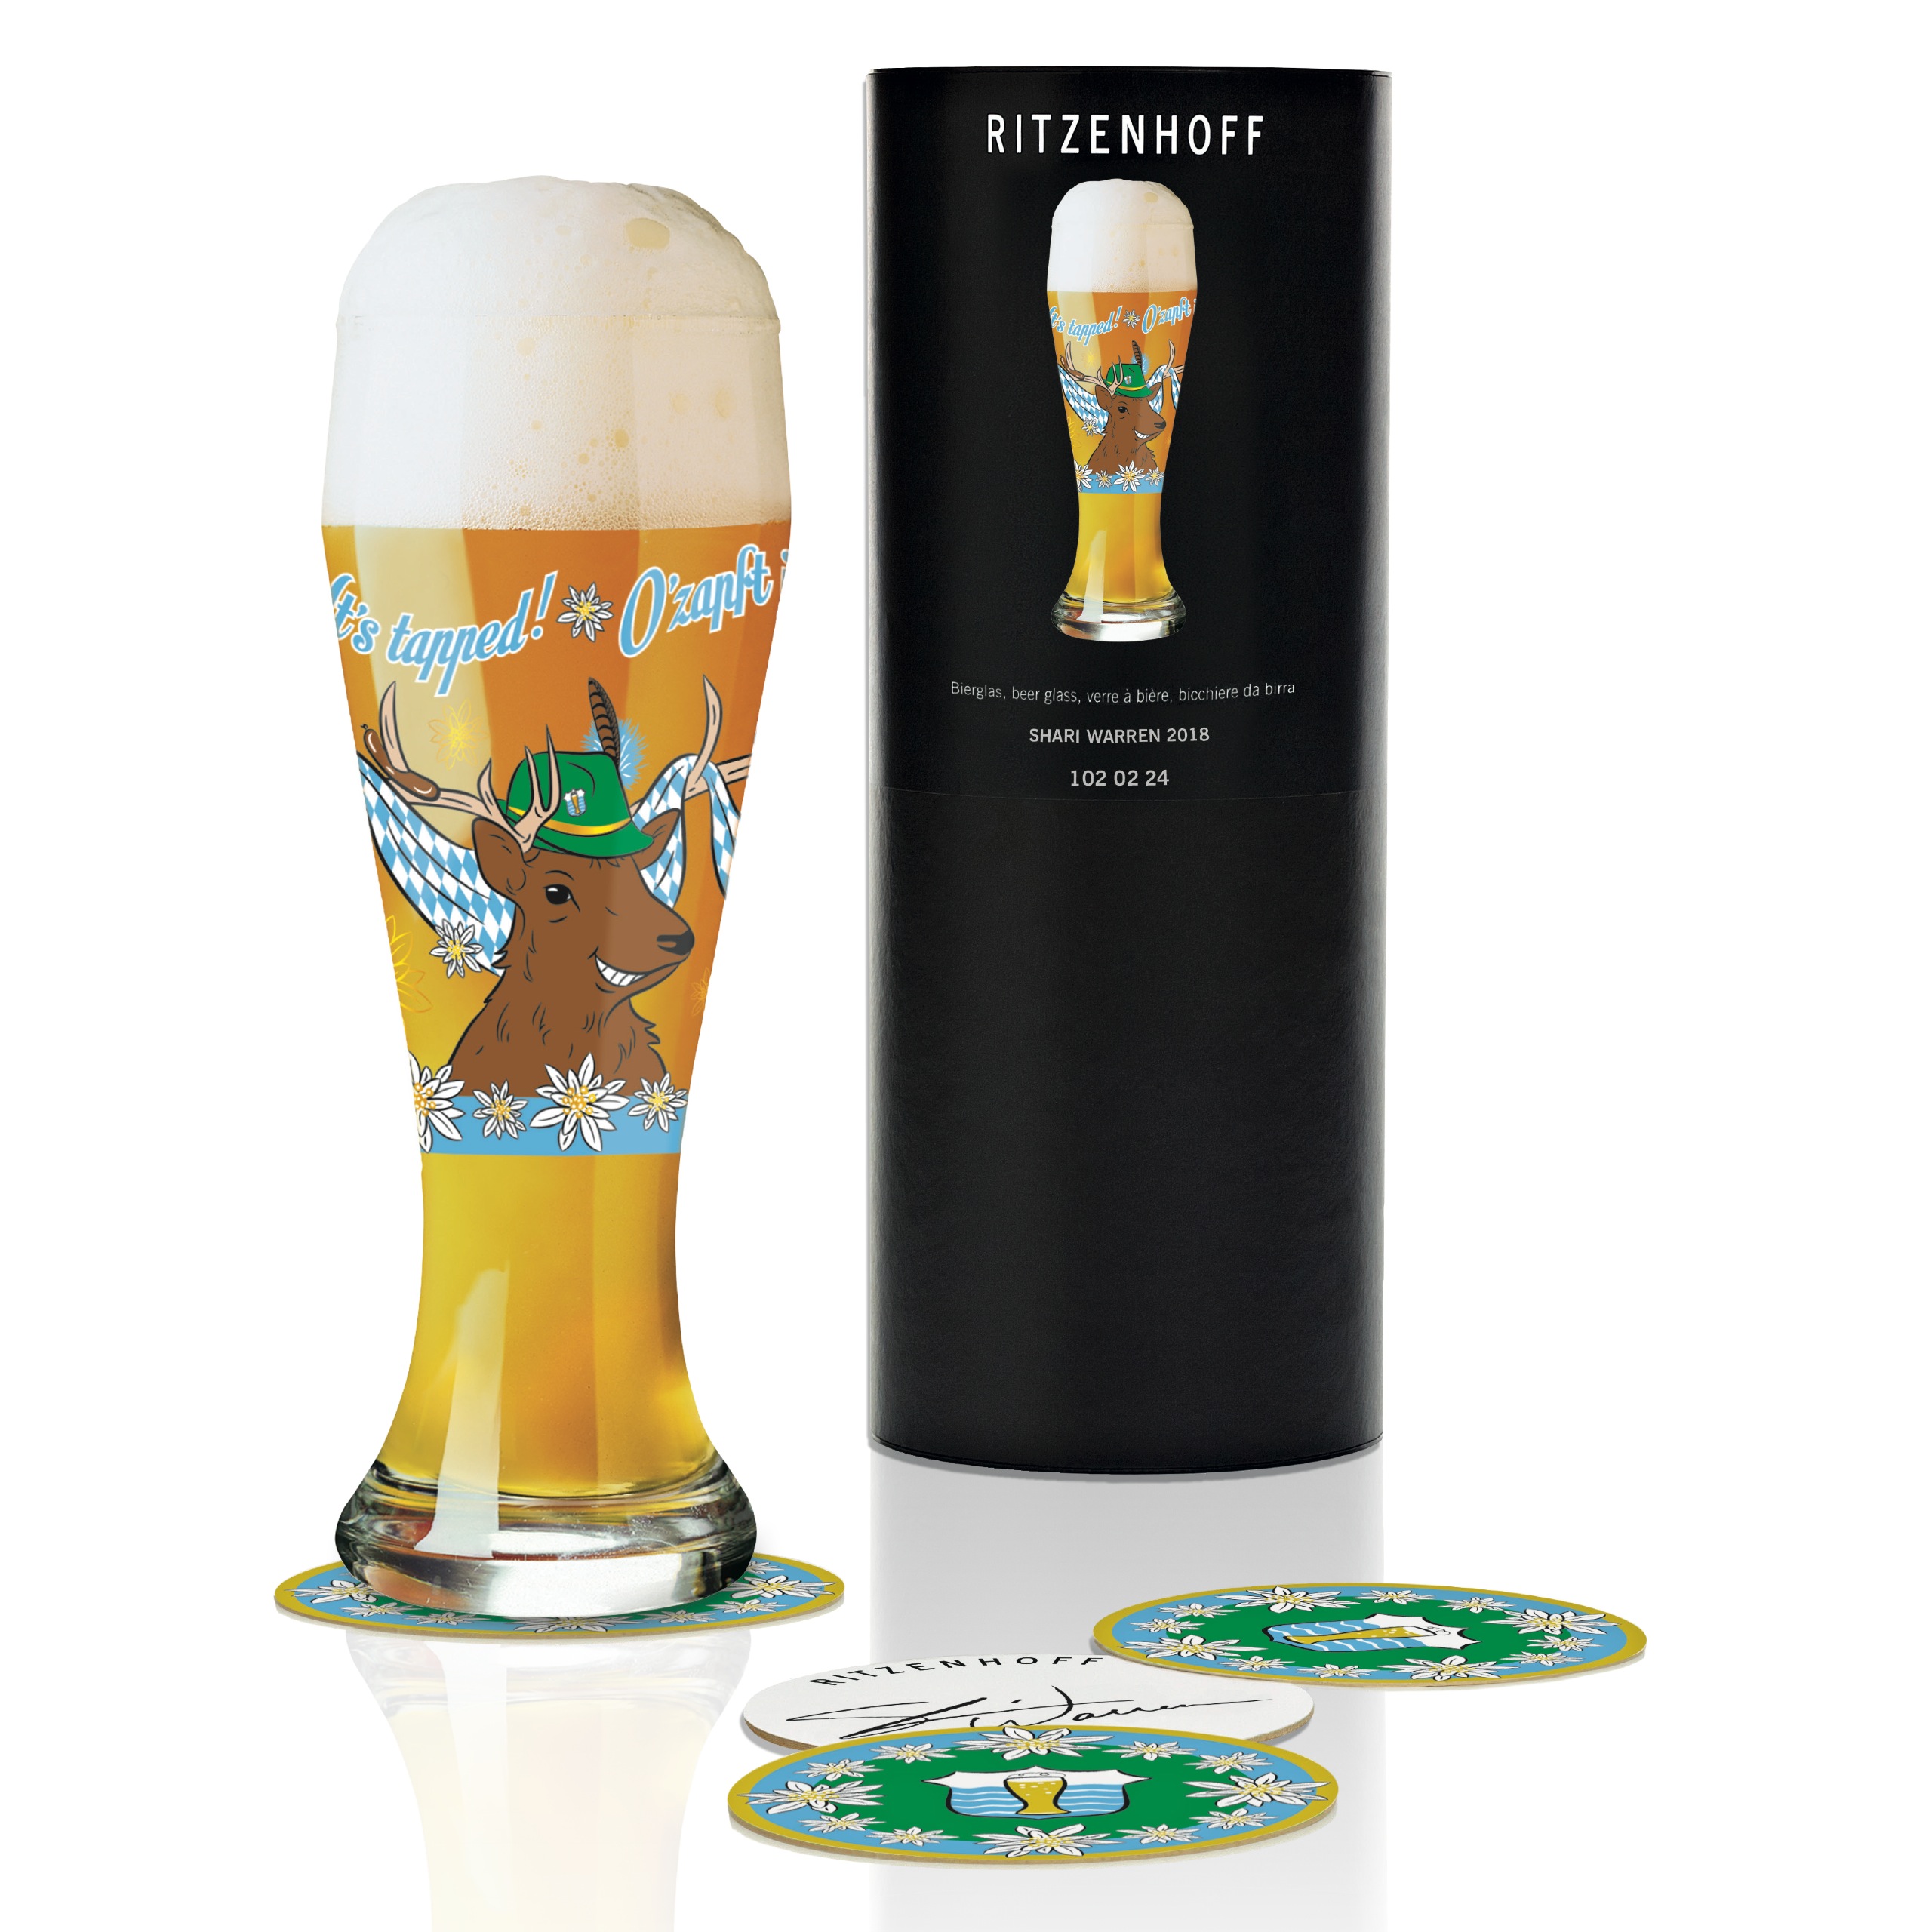 Ritzenhoff Wheat Beer beer glass Box 2018 by – Direct Warren S. Craft